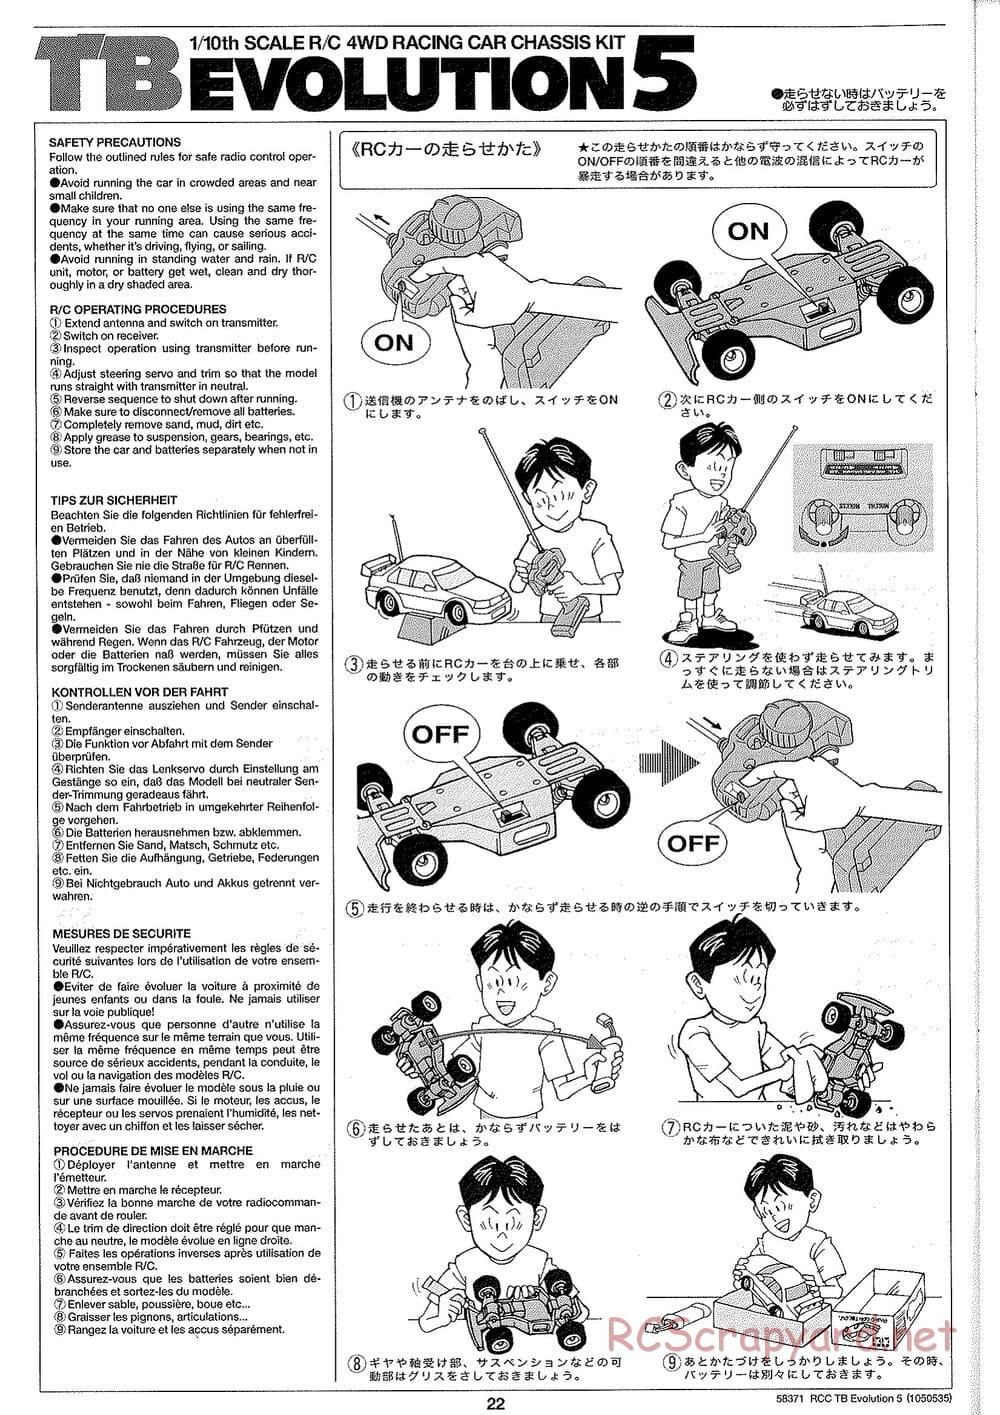 Tamiya - TB Evolution V Chassis - Manual - Page 22